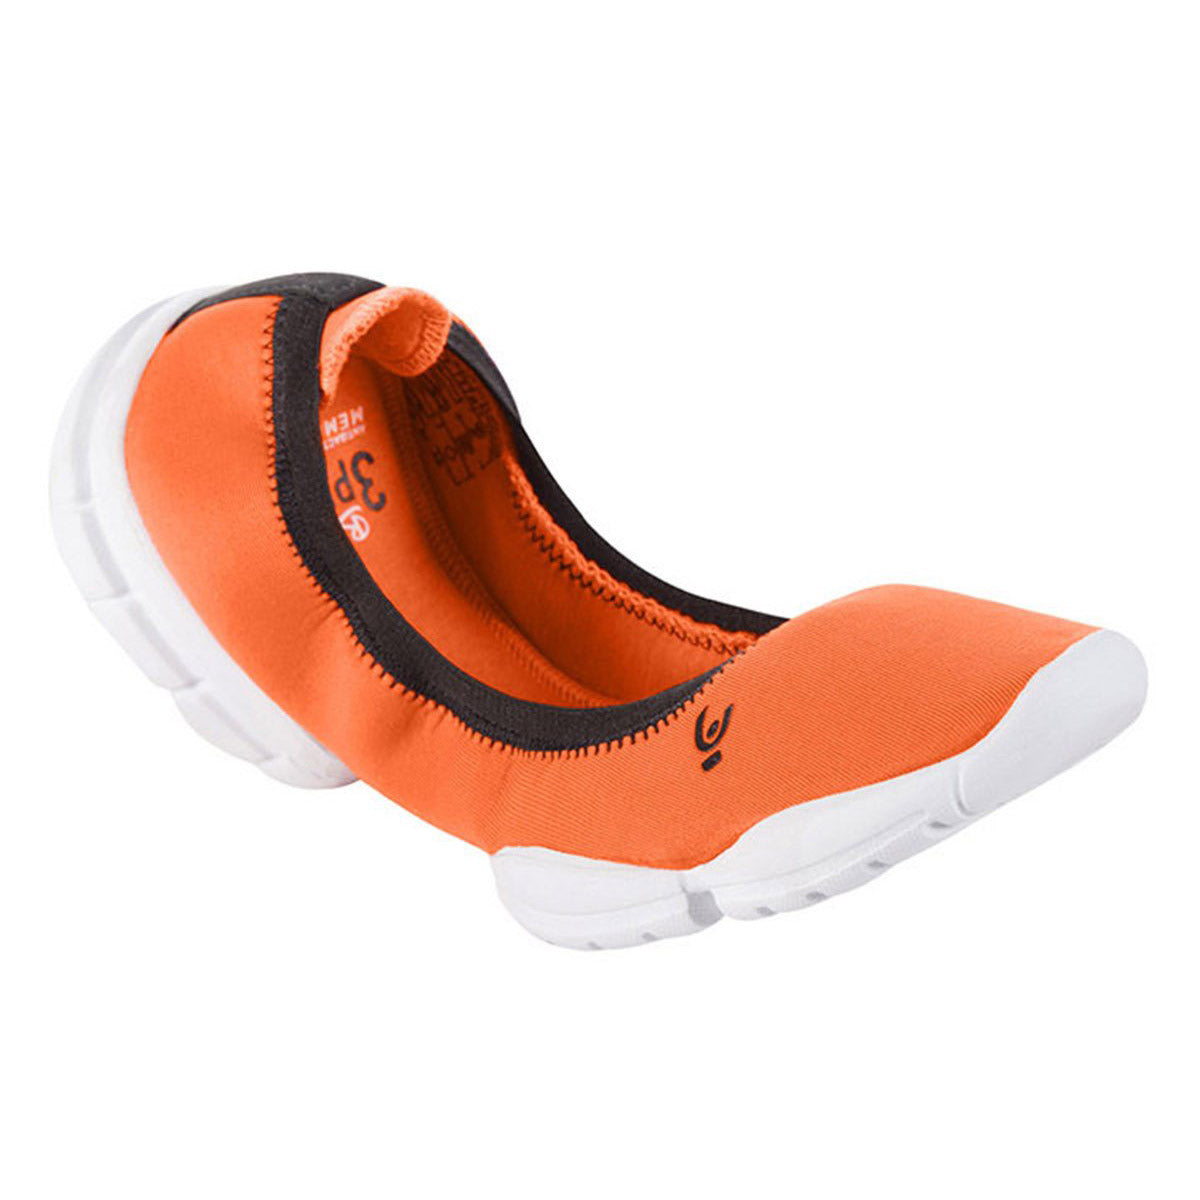 Freddy Orange 3D Pro Ballerina Shoe